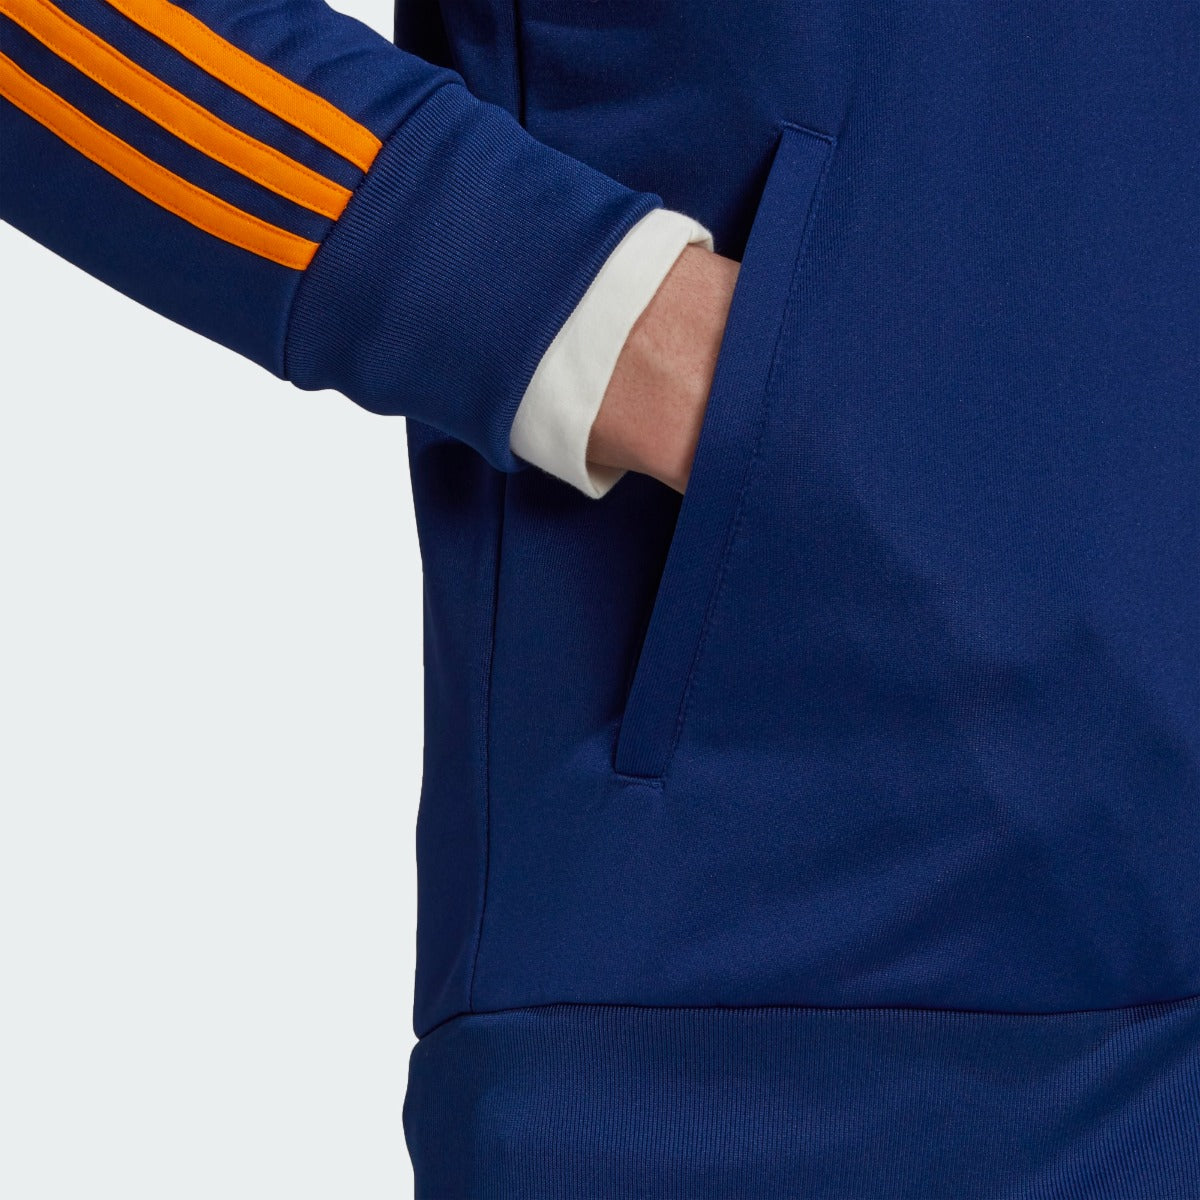 Adidas 2021-22 Real Madrid 3 Stripe Jacket - Navy-Orange (Detail 2)